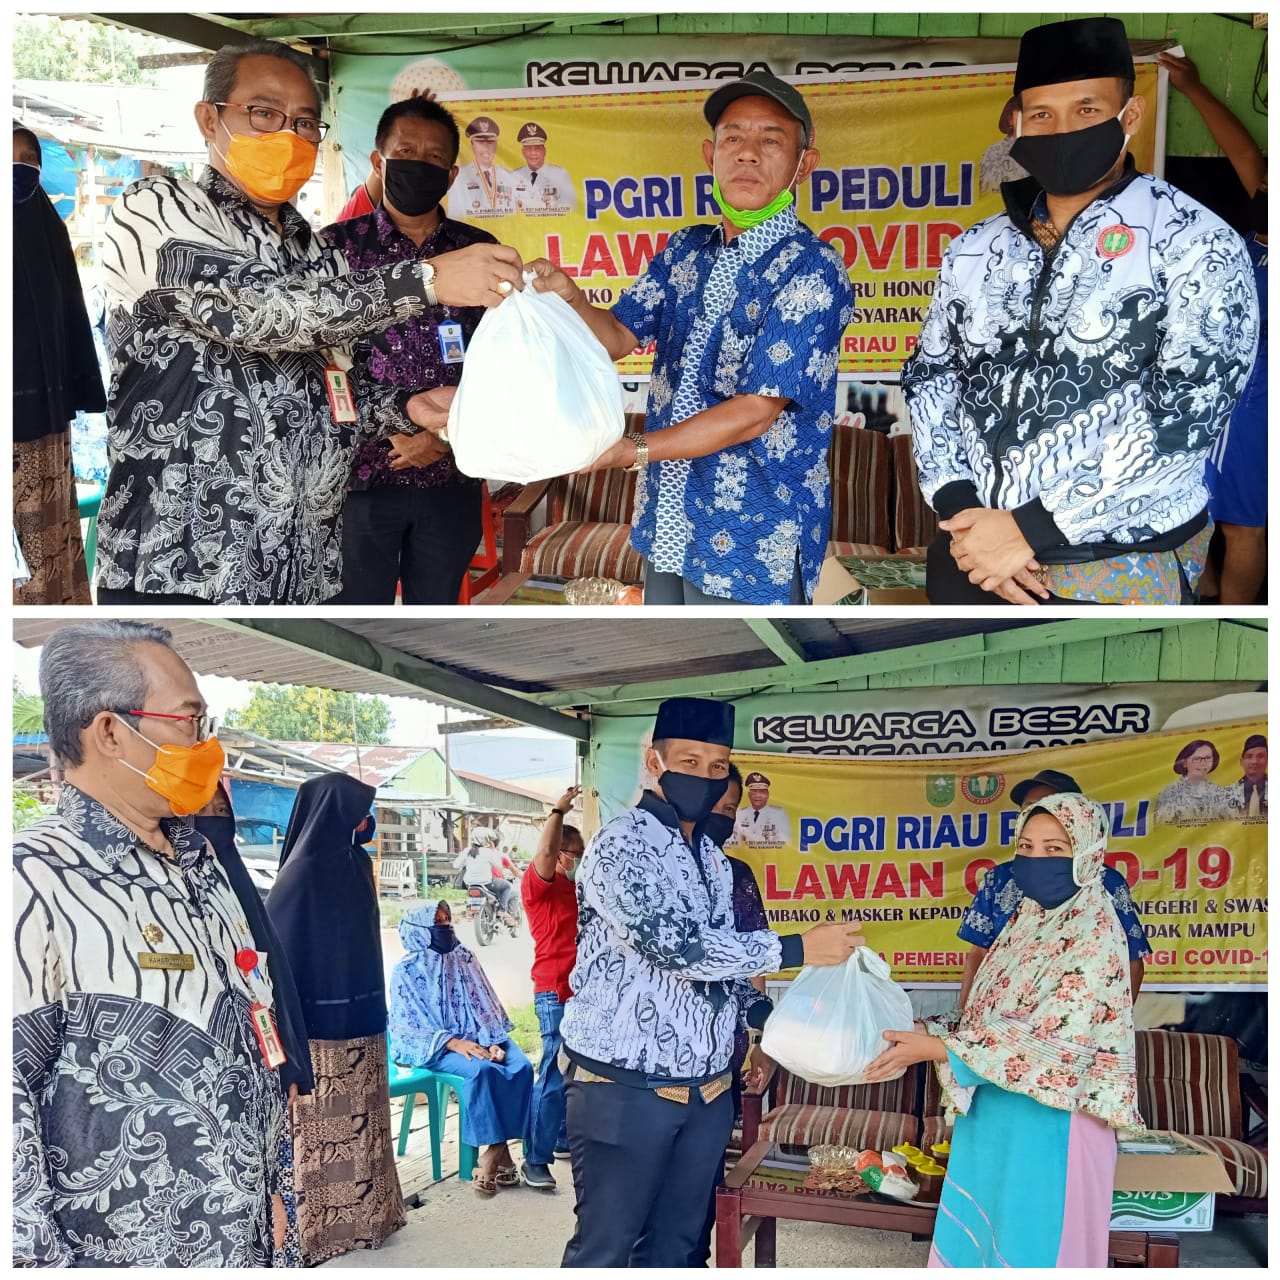 Linda Senang dan Terharu Terima Bantuan Sembako dari Program PGRI Riau Peduli Covid 19